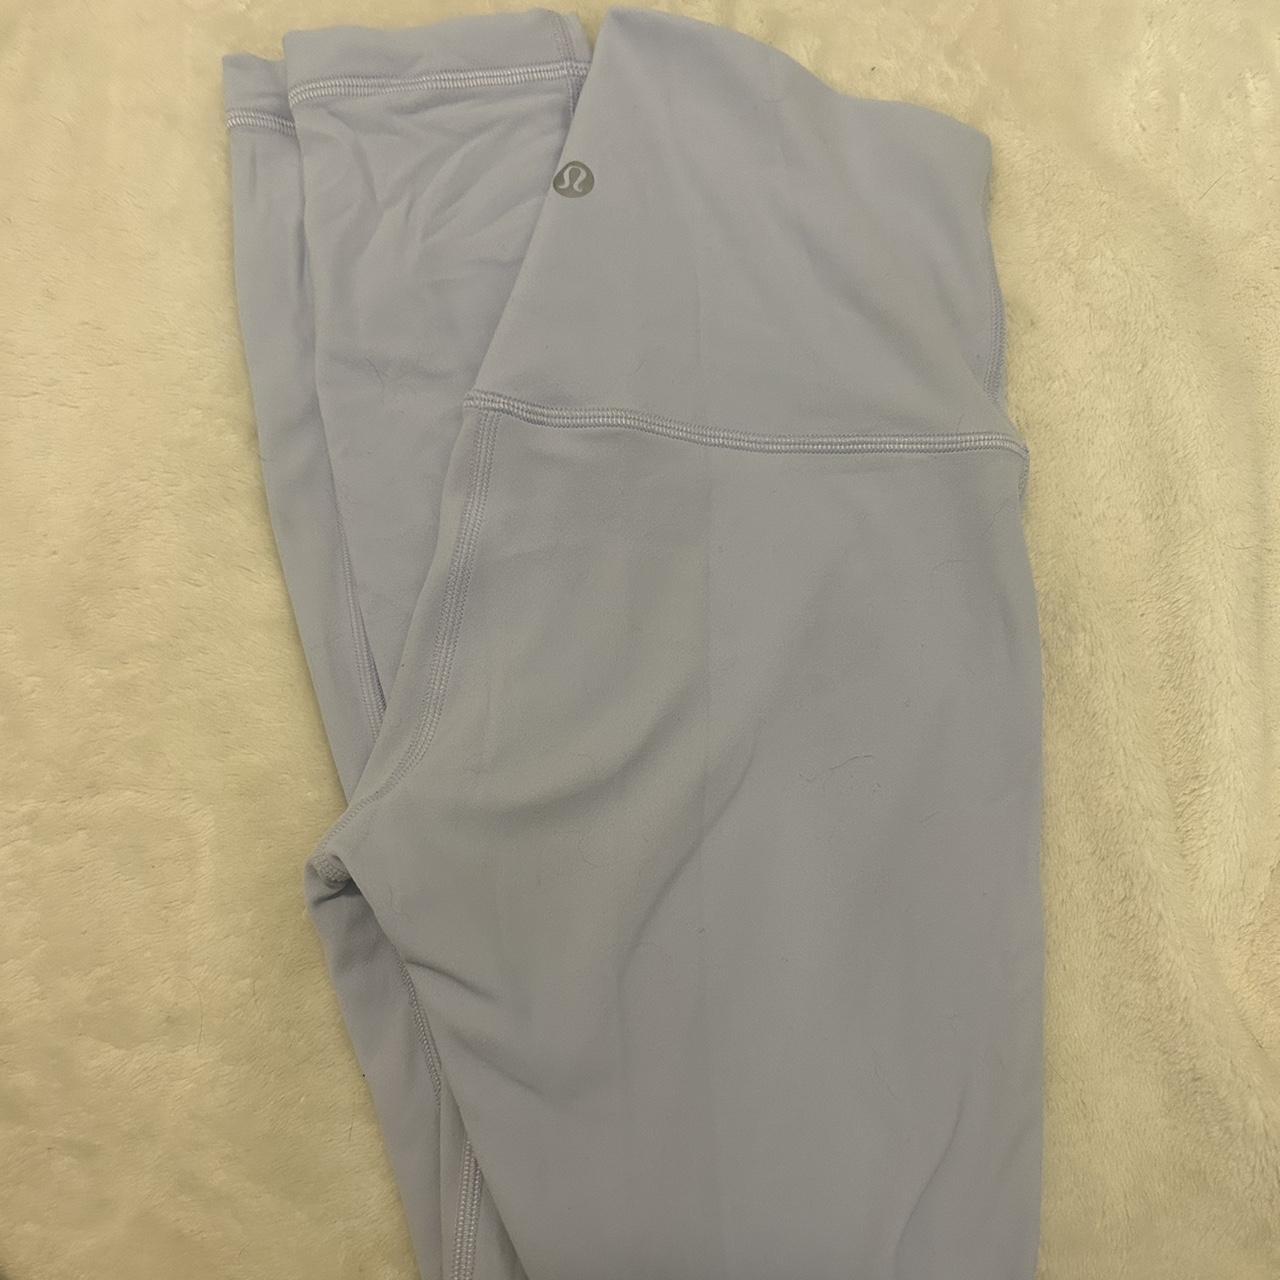 Light blue lululemon leggings size 4